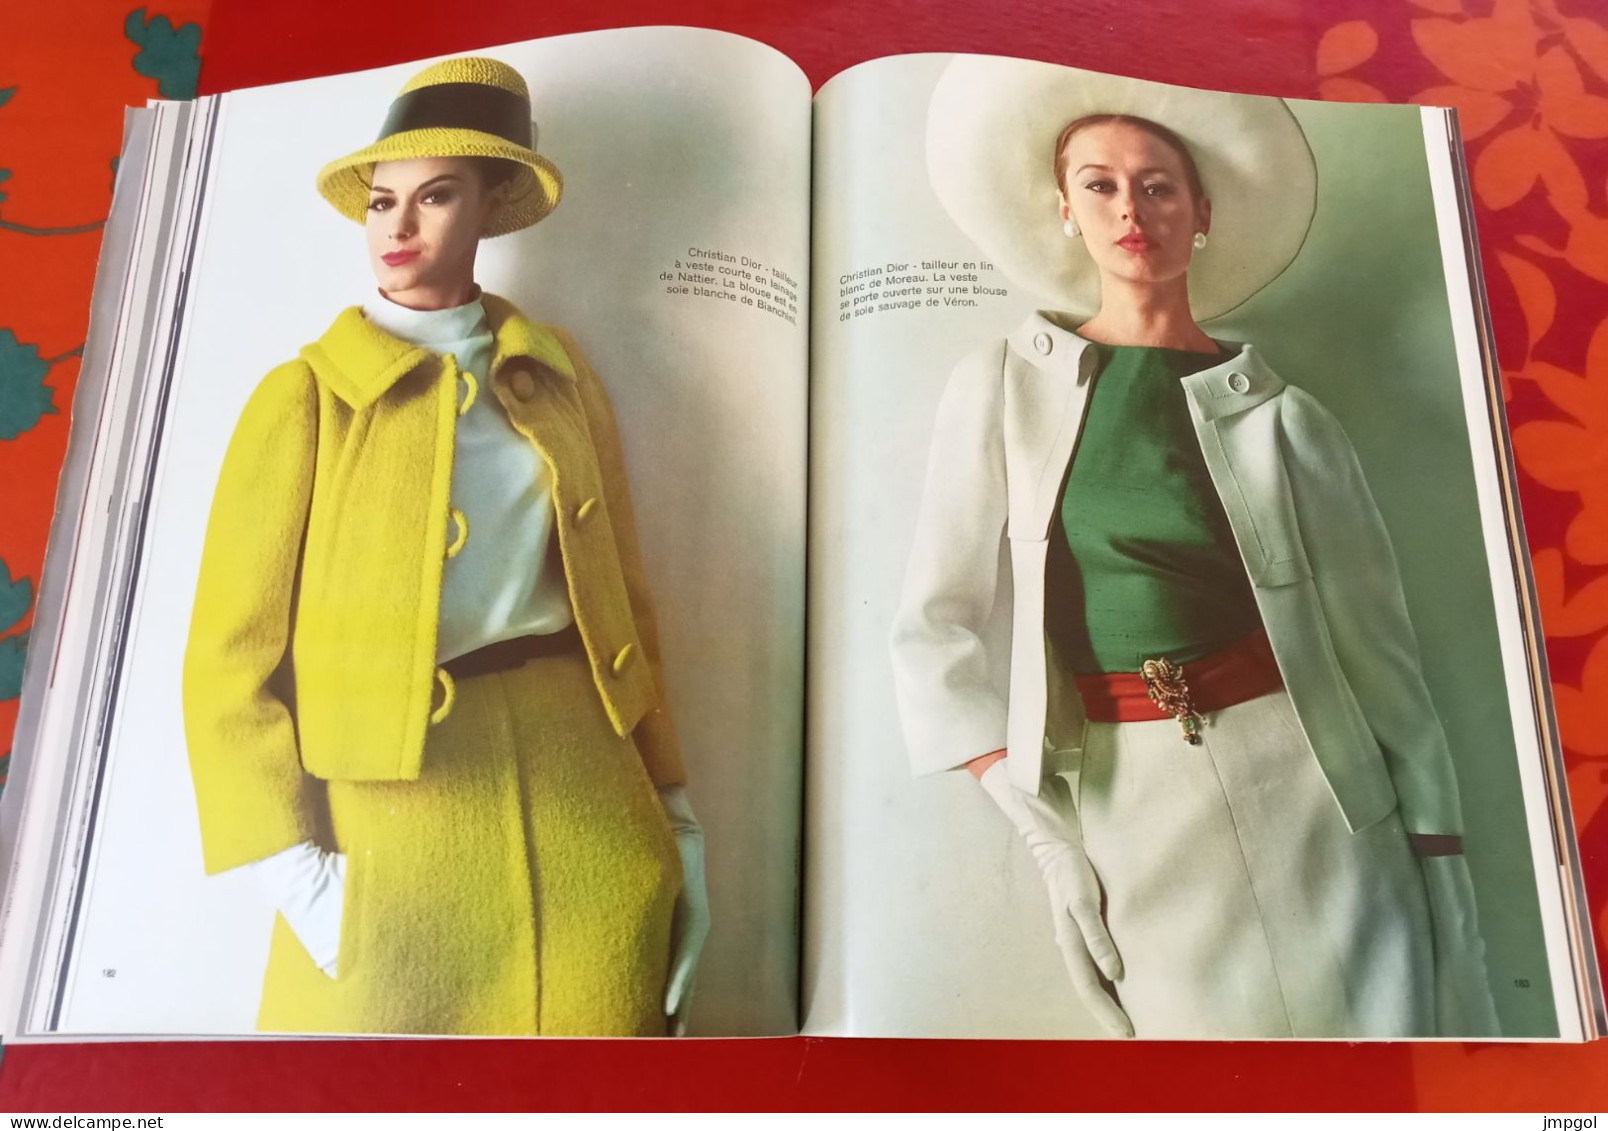 Femme Chic n°494 Collections Toute la Mode Printemps 1963 Dior Balmain Chanel Heim Patou De Rauch Saint Laurent